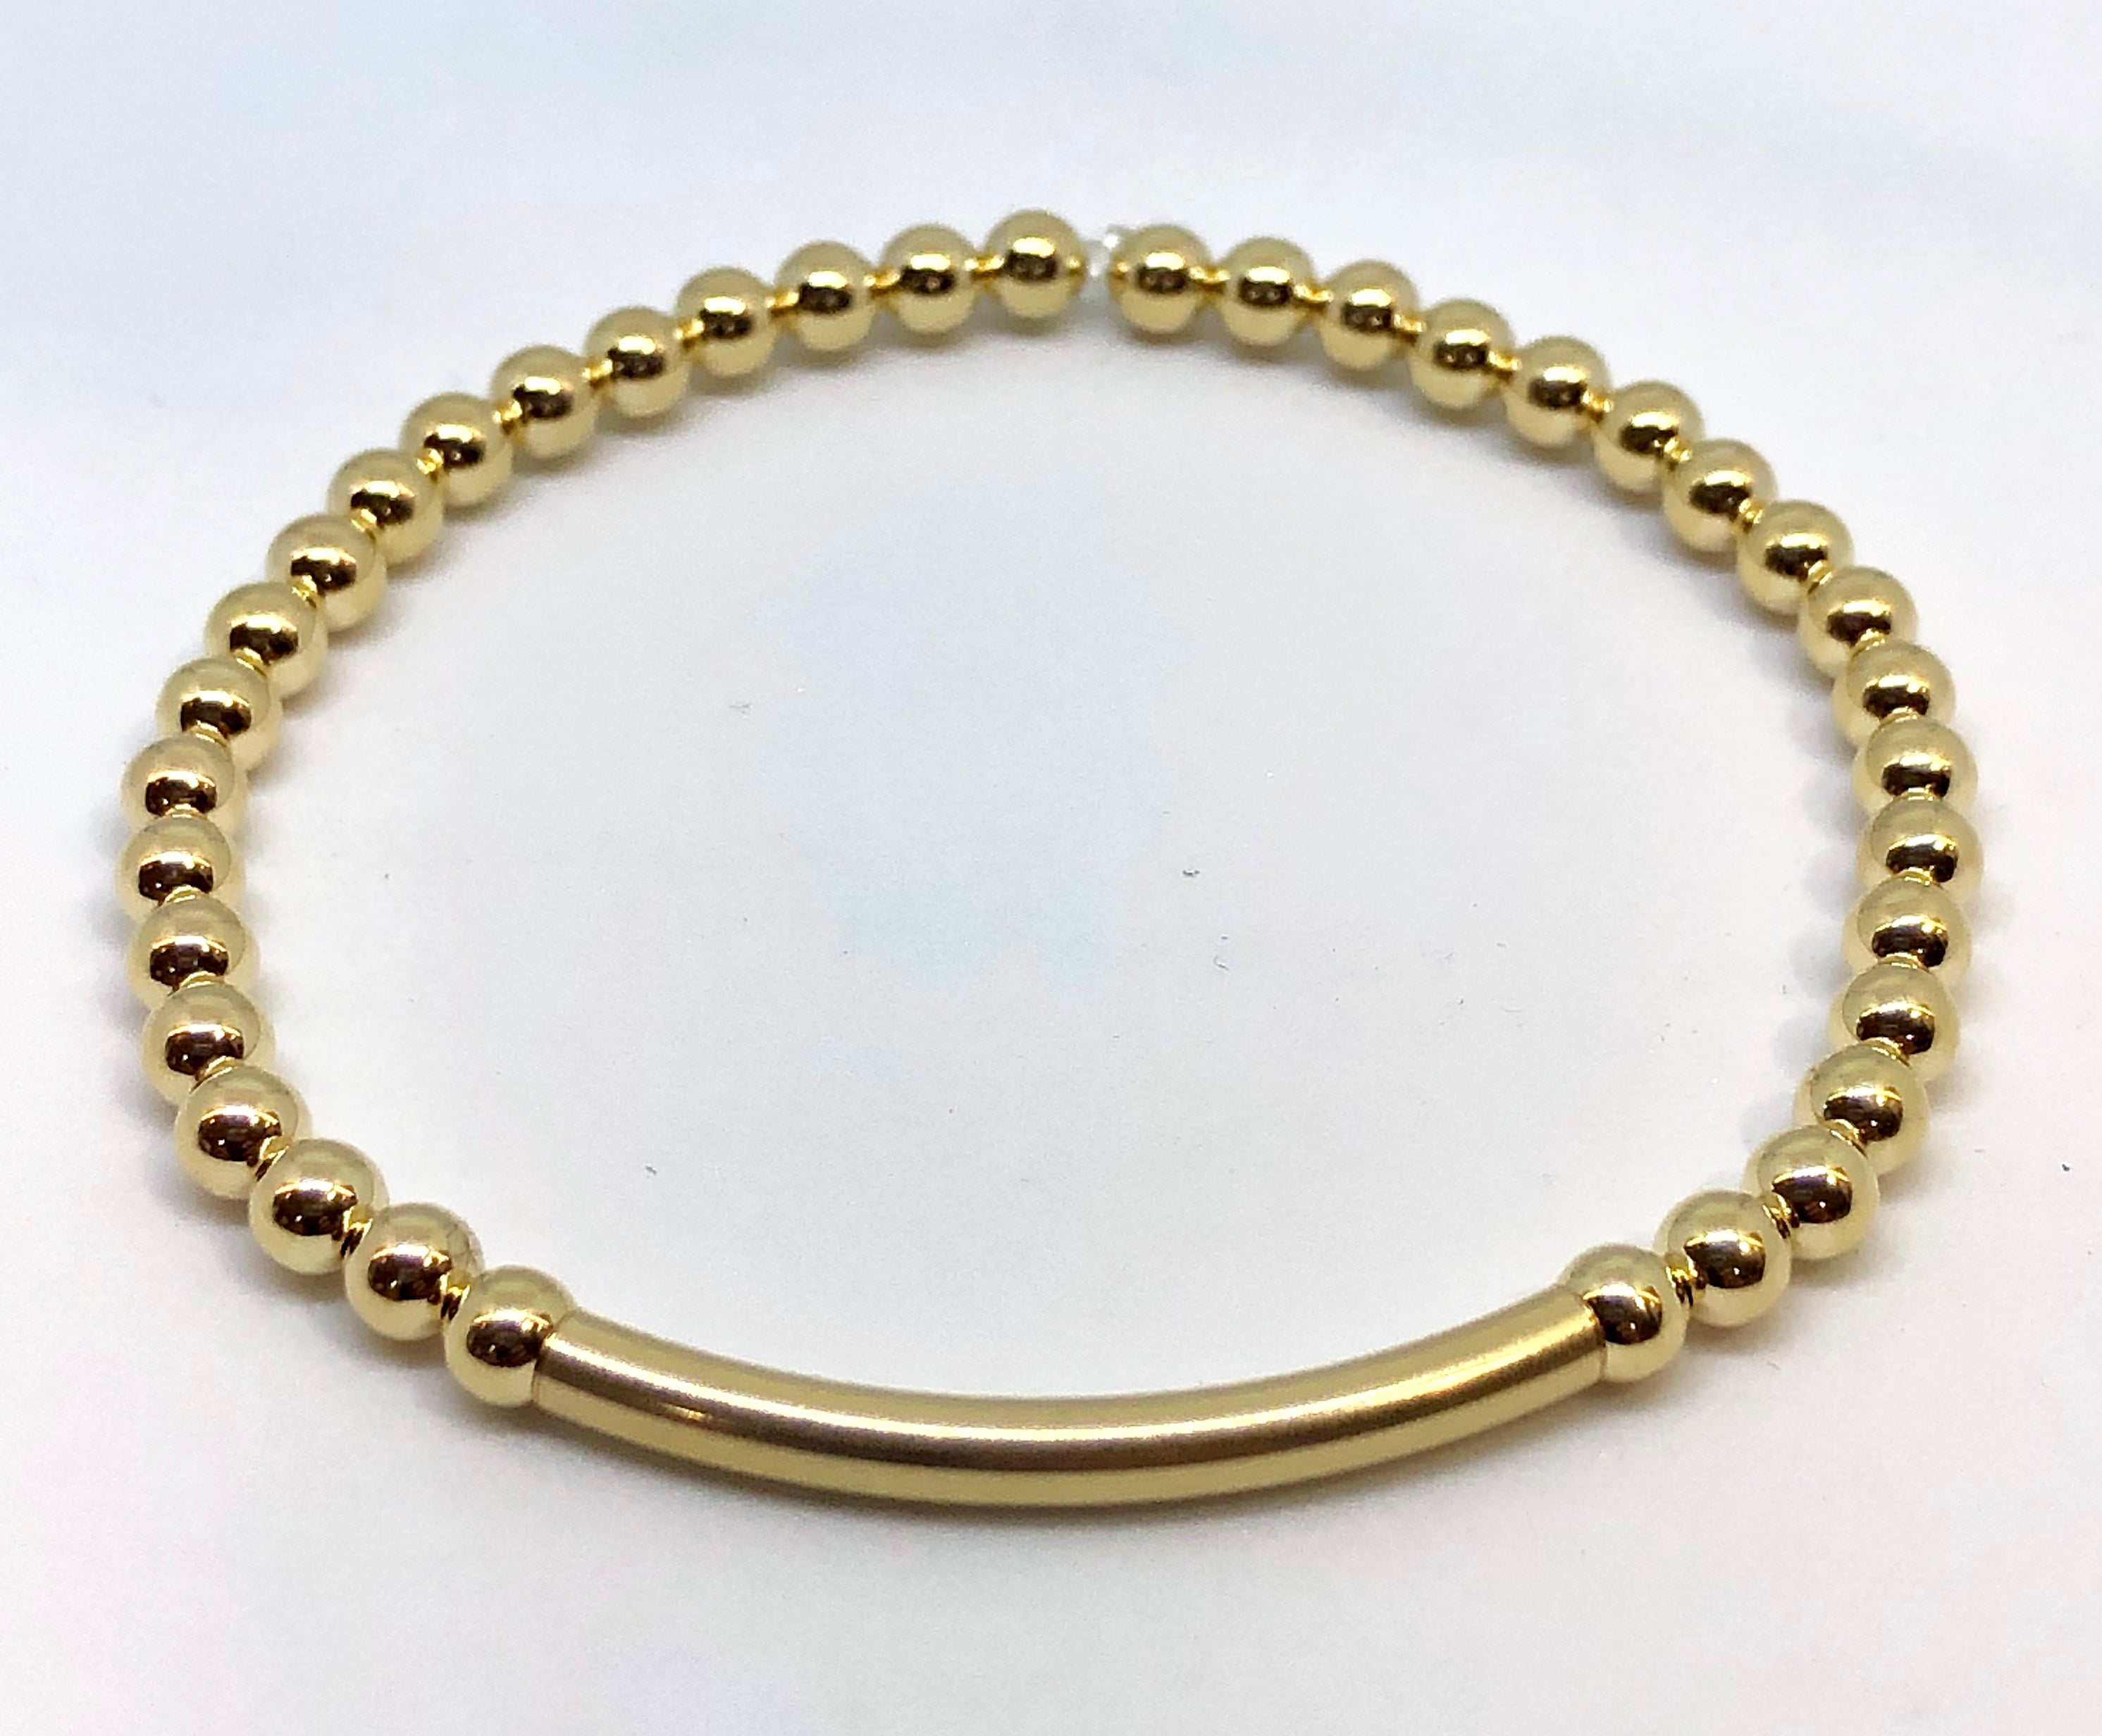 4mm 14kt Gold Filled Bead Bracelet with 4mm Gold Bar